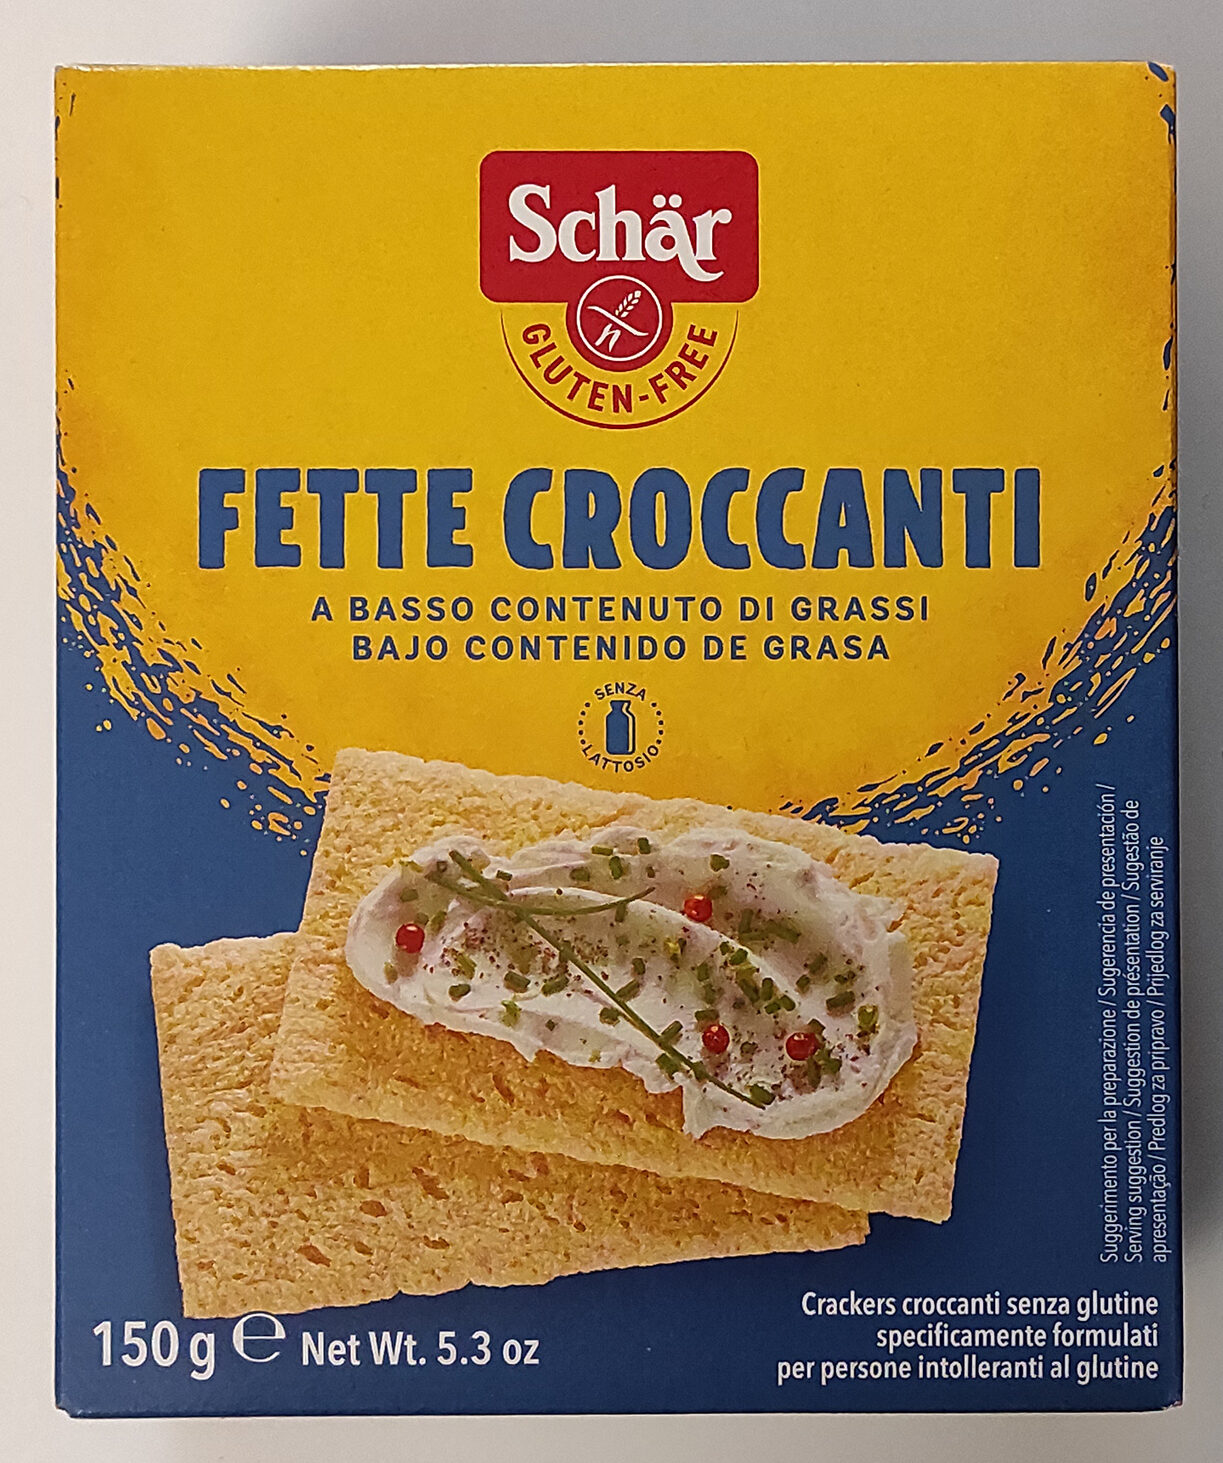 Fette Croccanti - Product - en